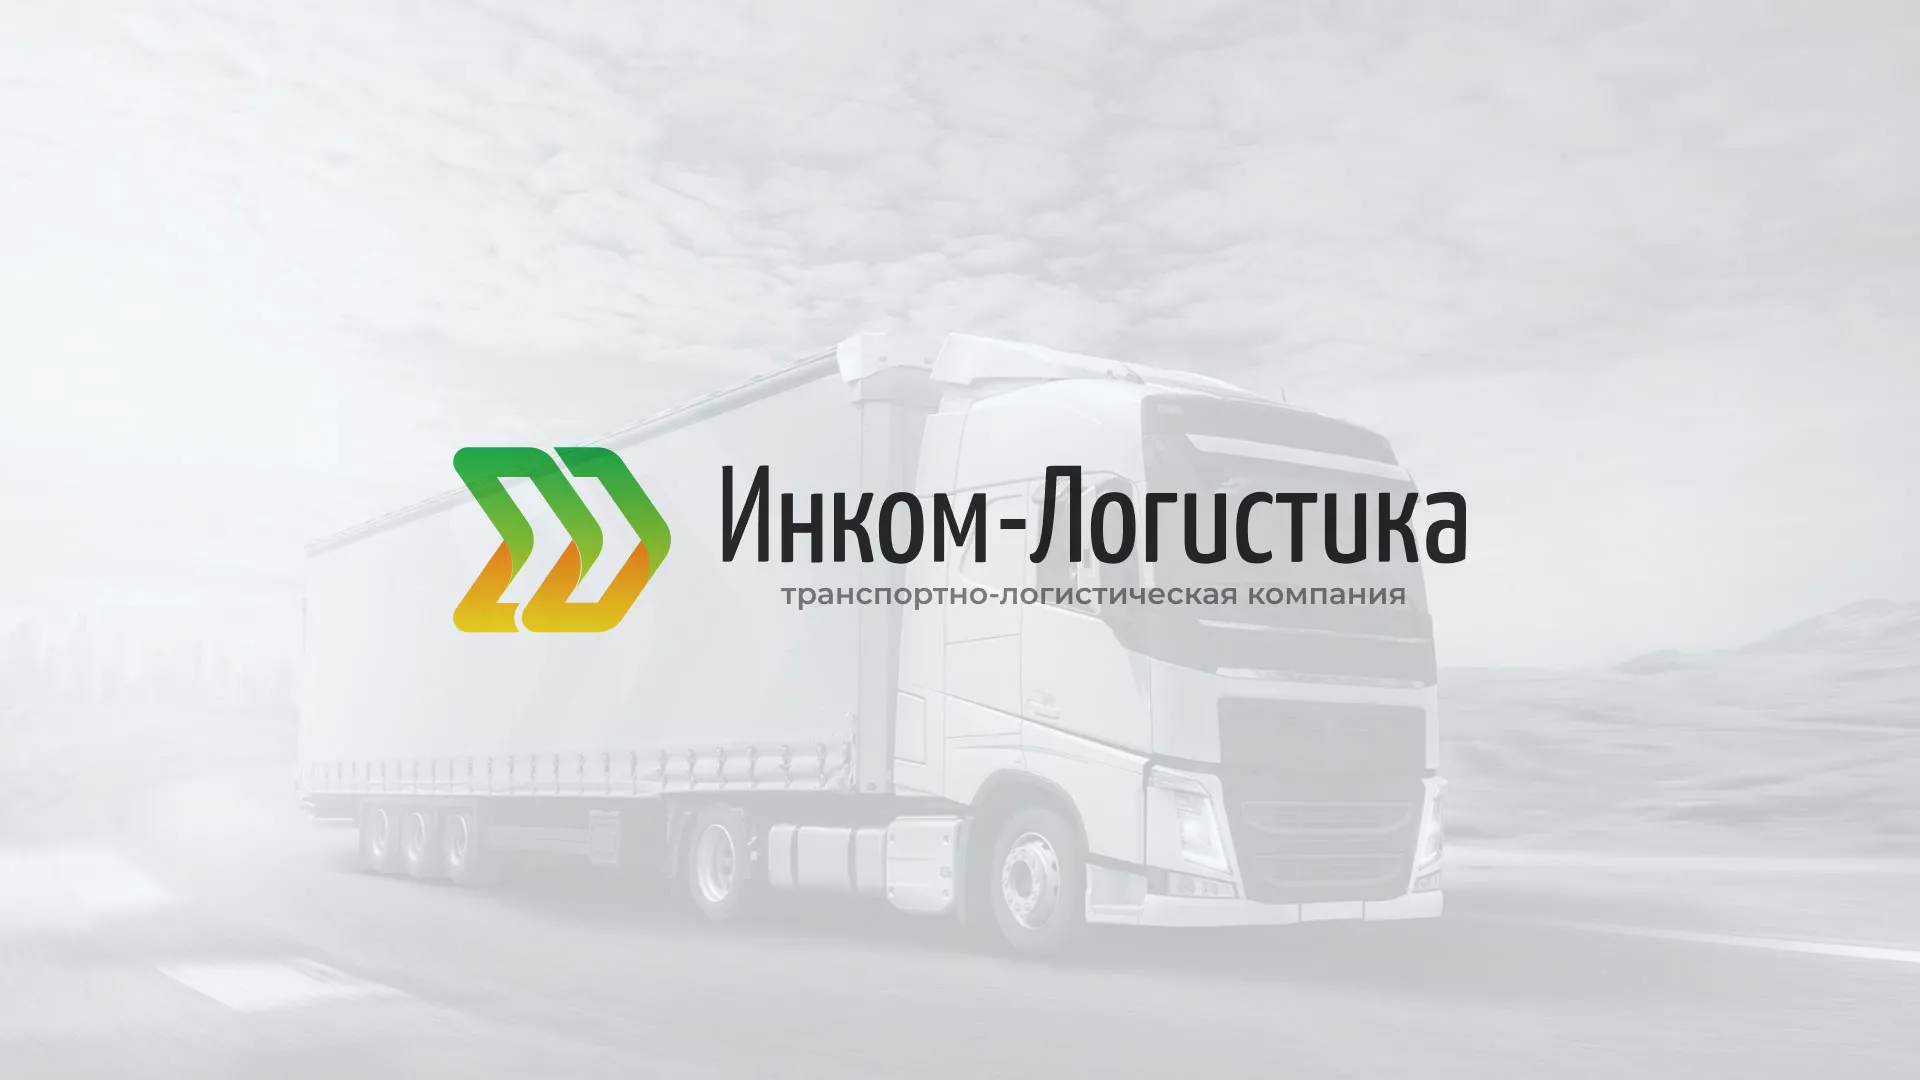 Разработка логотипа и сайта компании «Инком-Логистика» в Заполярном